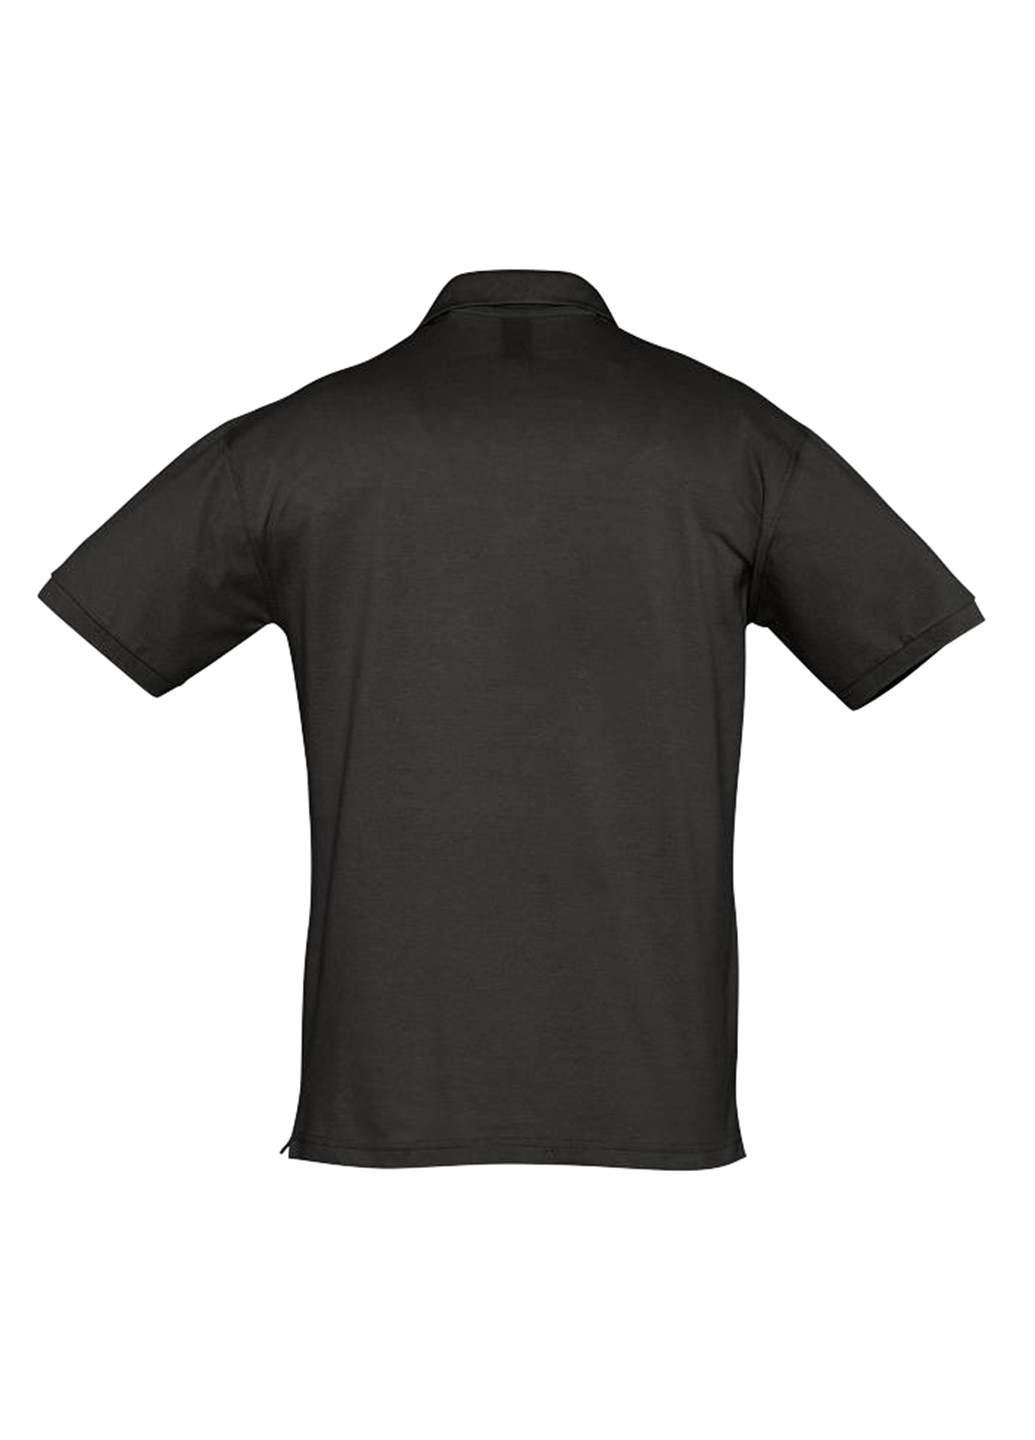 Черная футболка-поло для мужчин Sol's